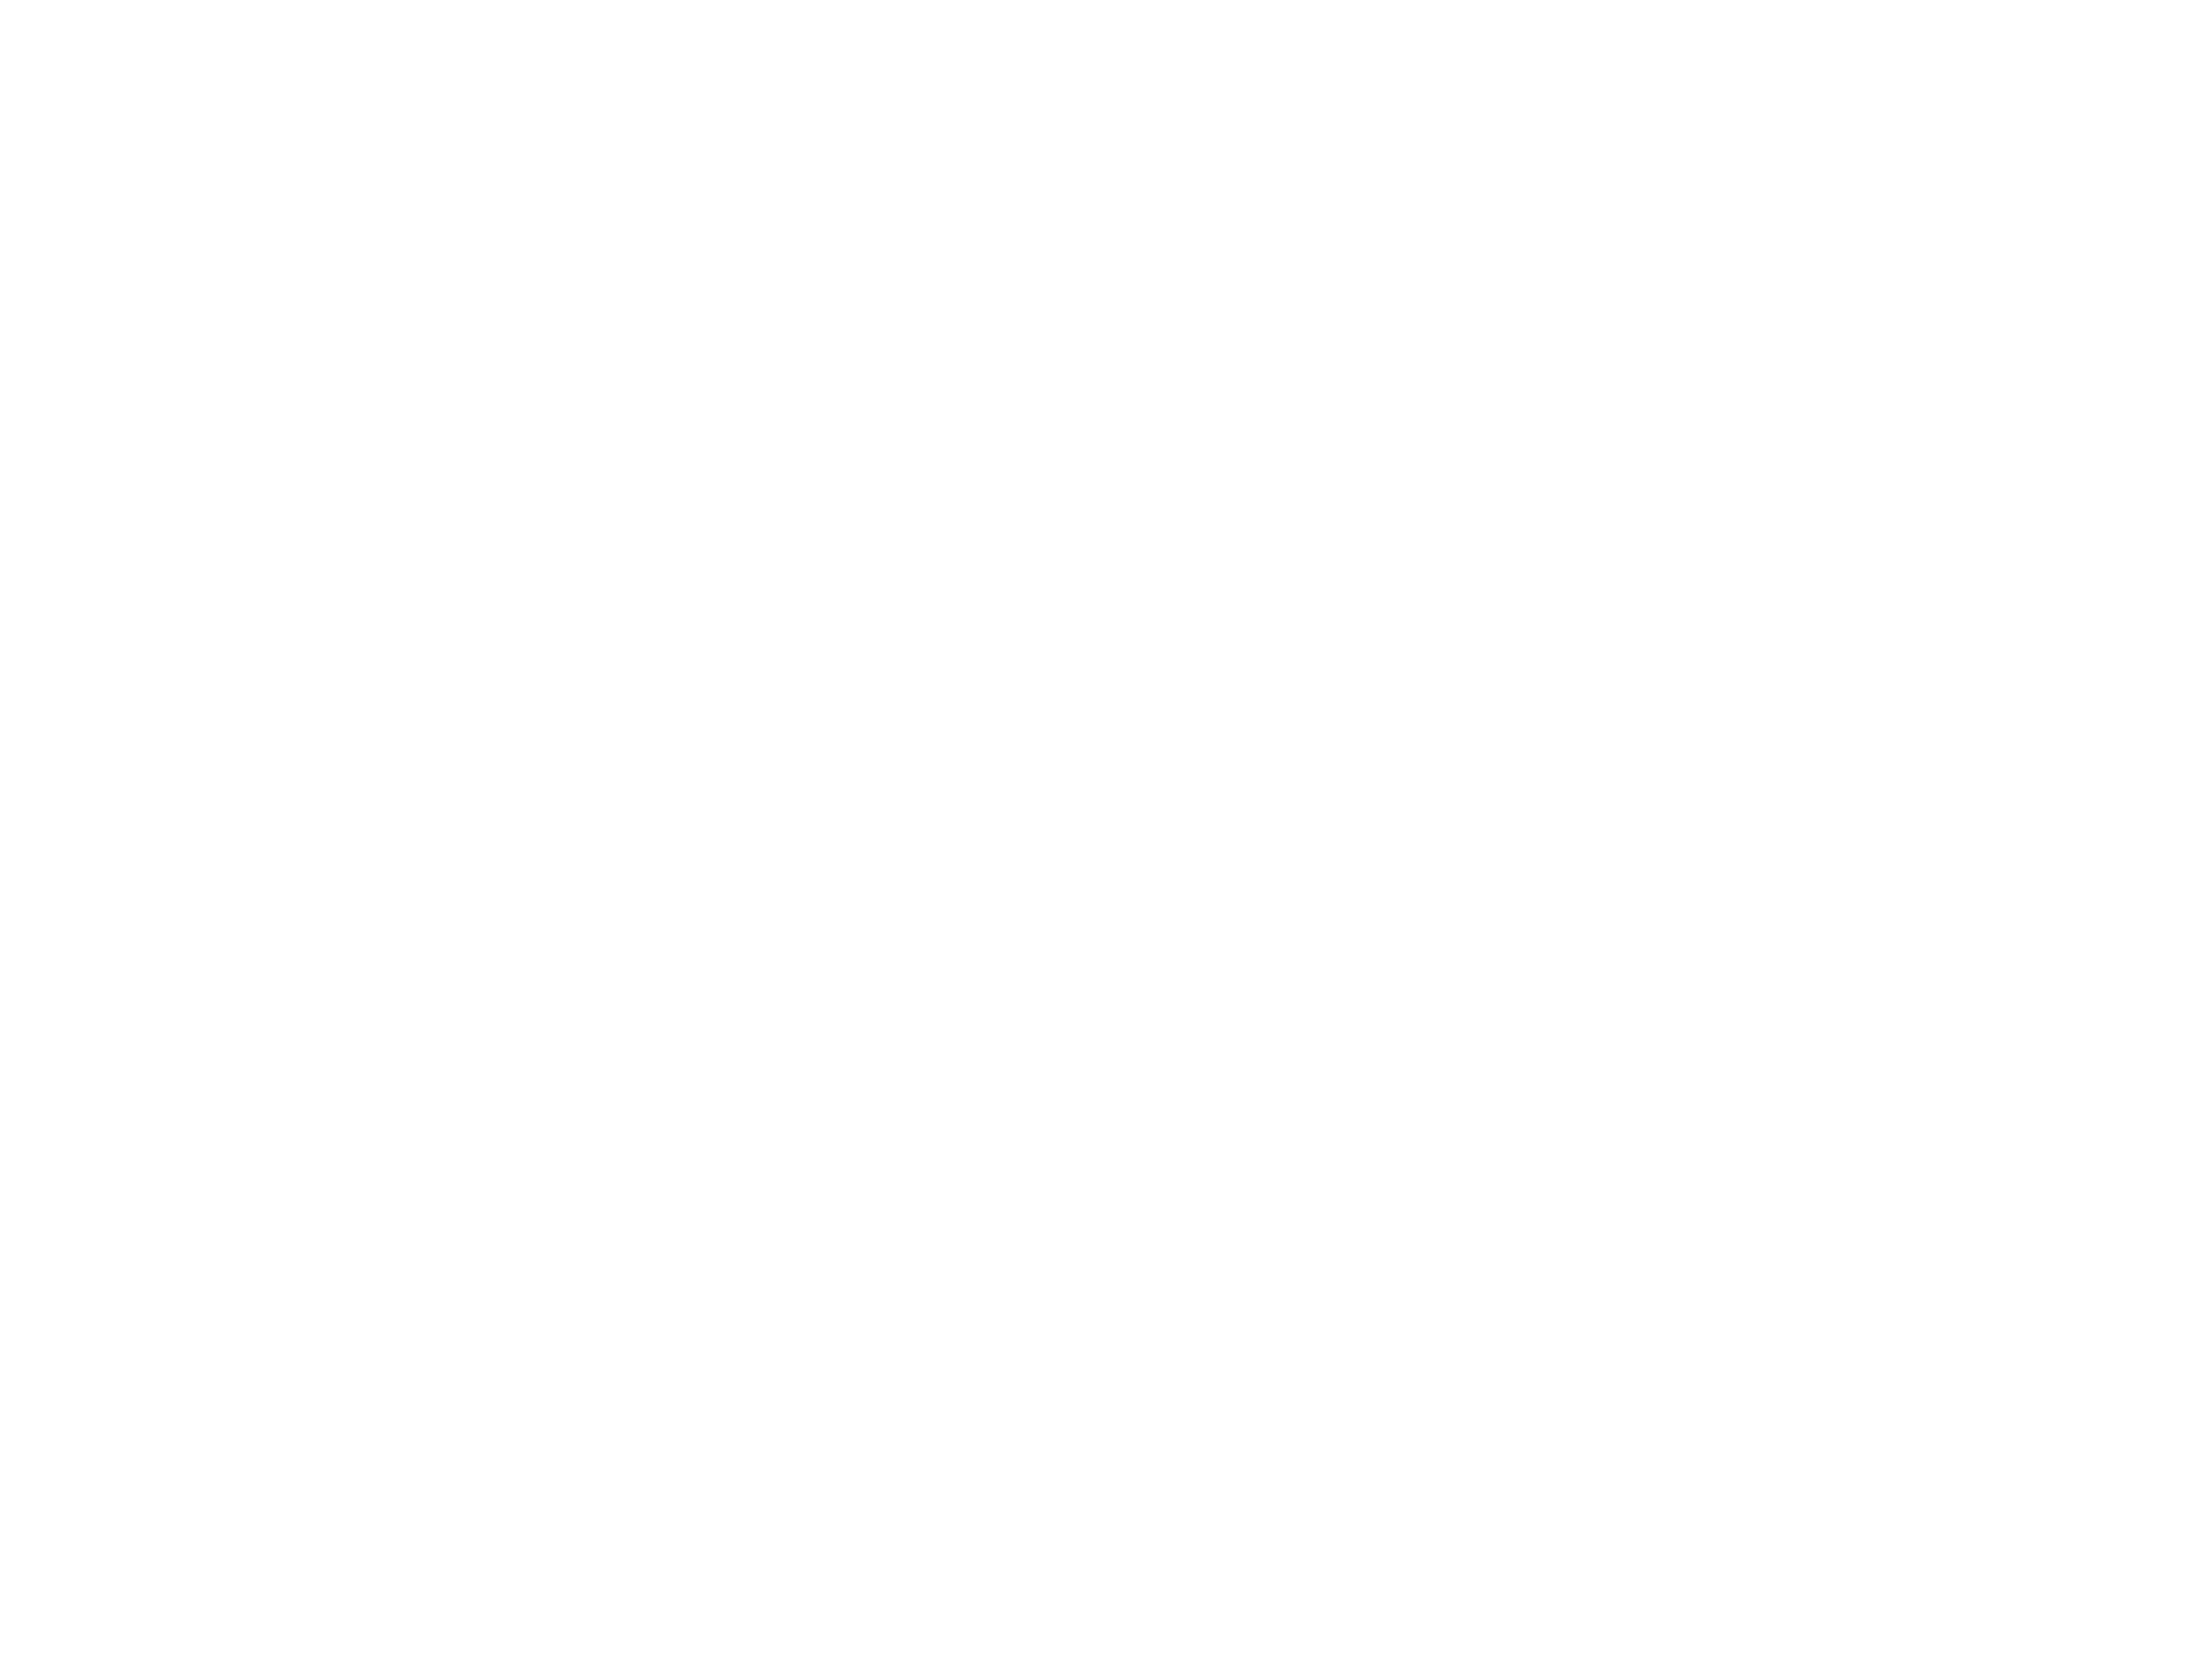 Nienke Poll